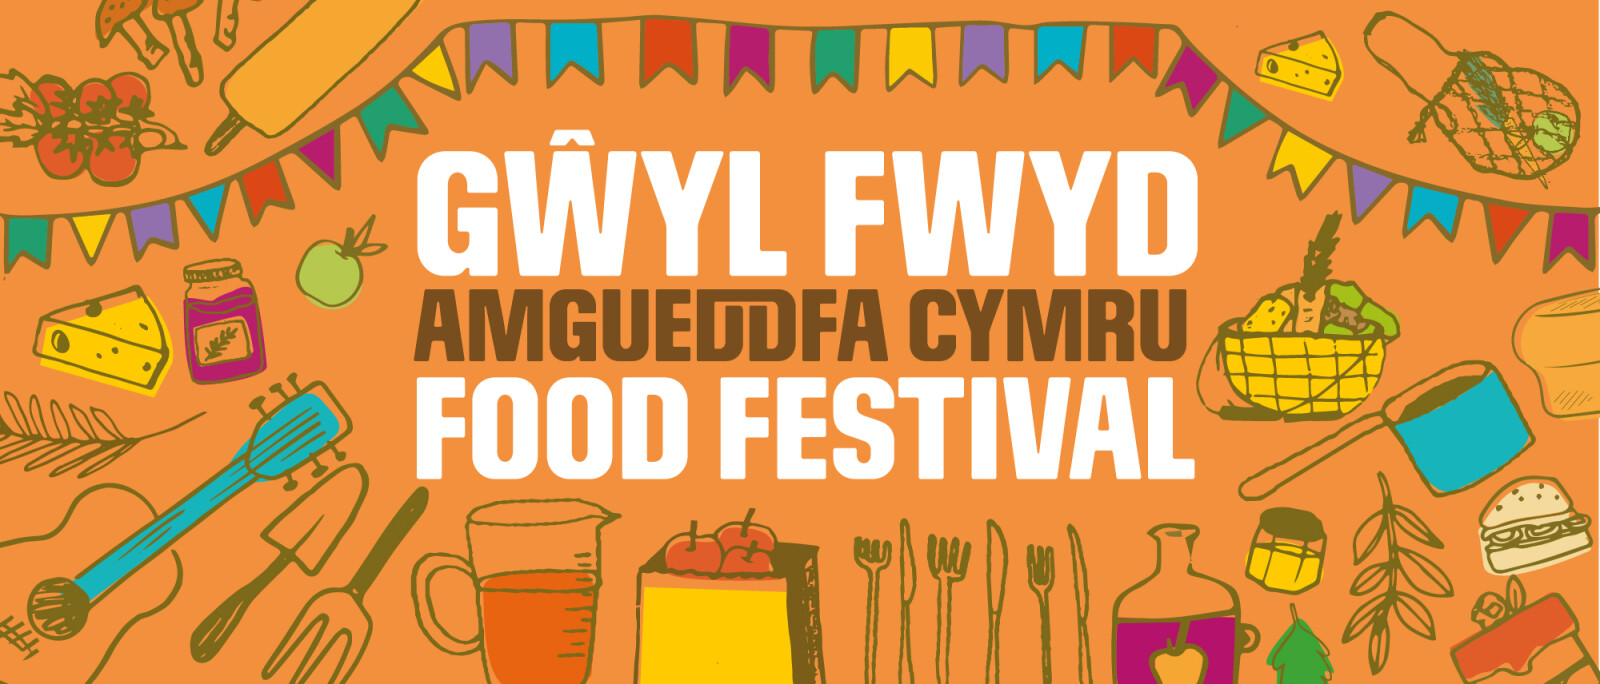 Gwyl Fwyd Amgueddfa Cymru